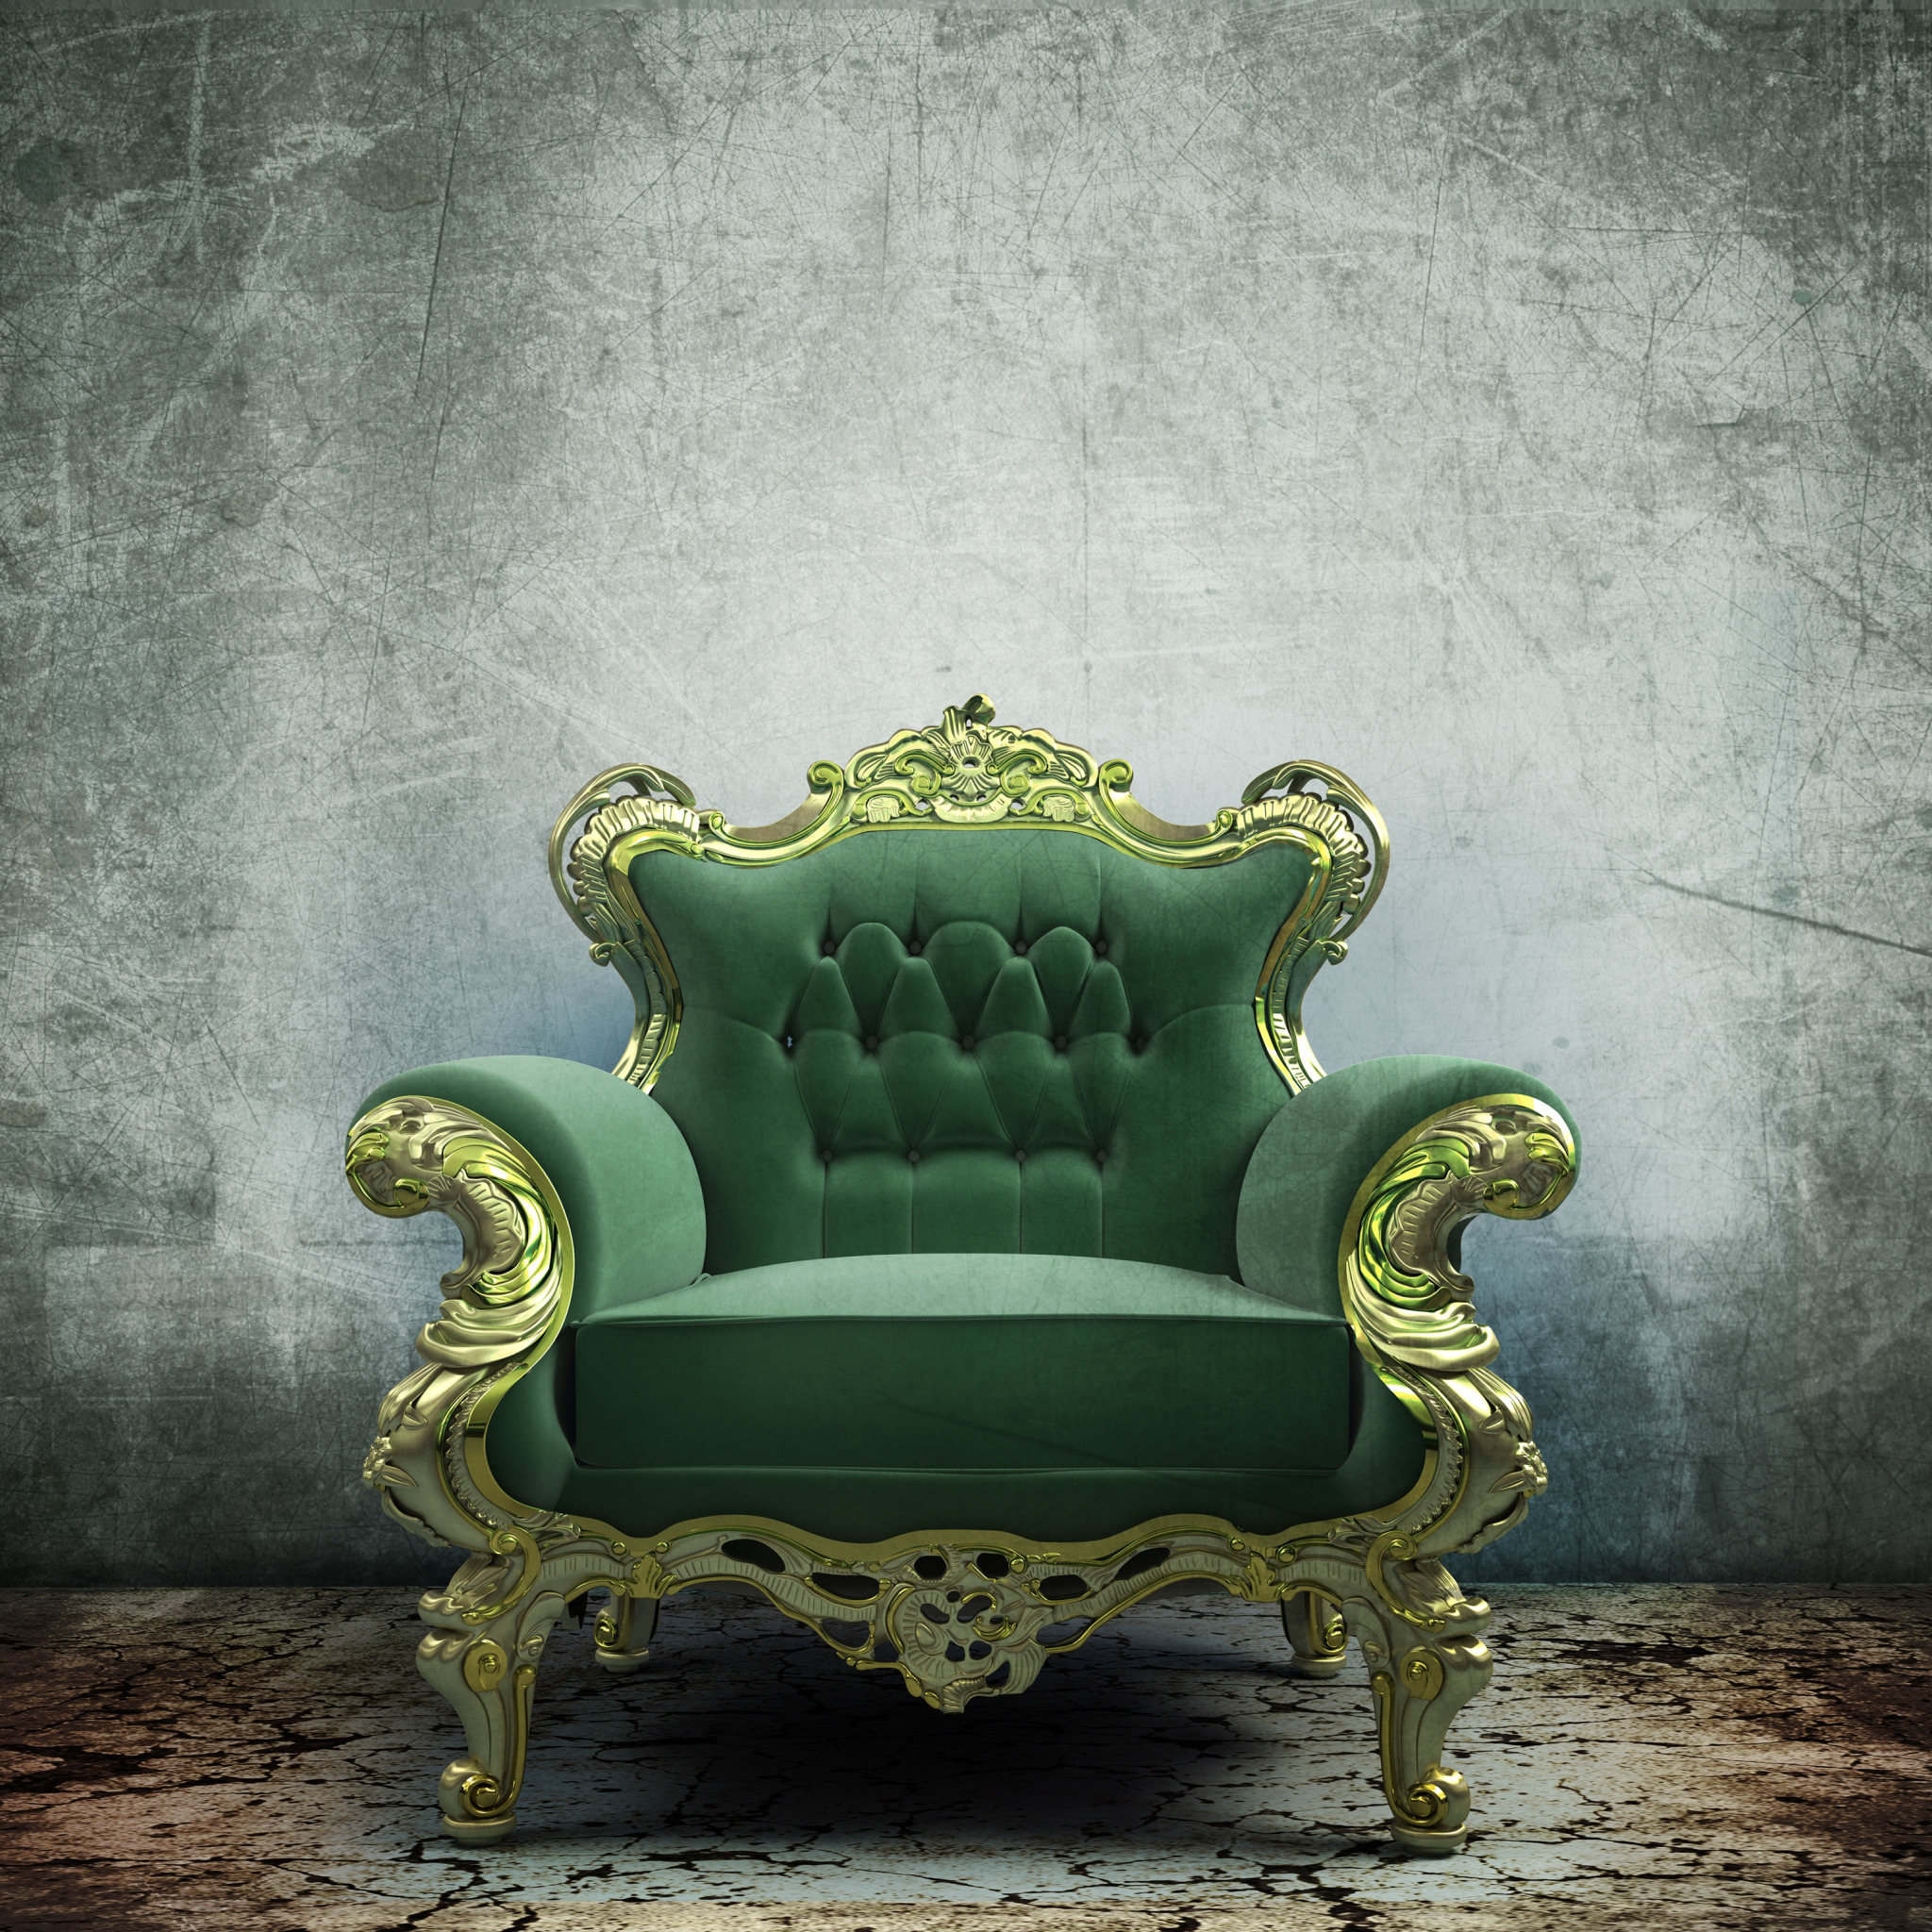 Лейбл кресла. Кресло трон. Кресло Рон в интерьере. Зеленый трон. Кресло трон в интерьере.